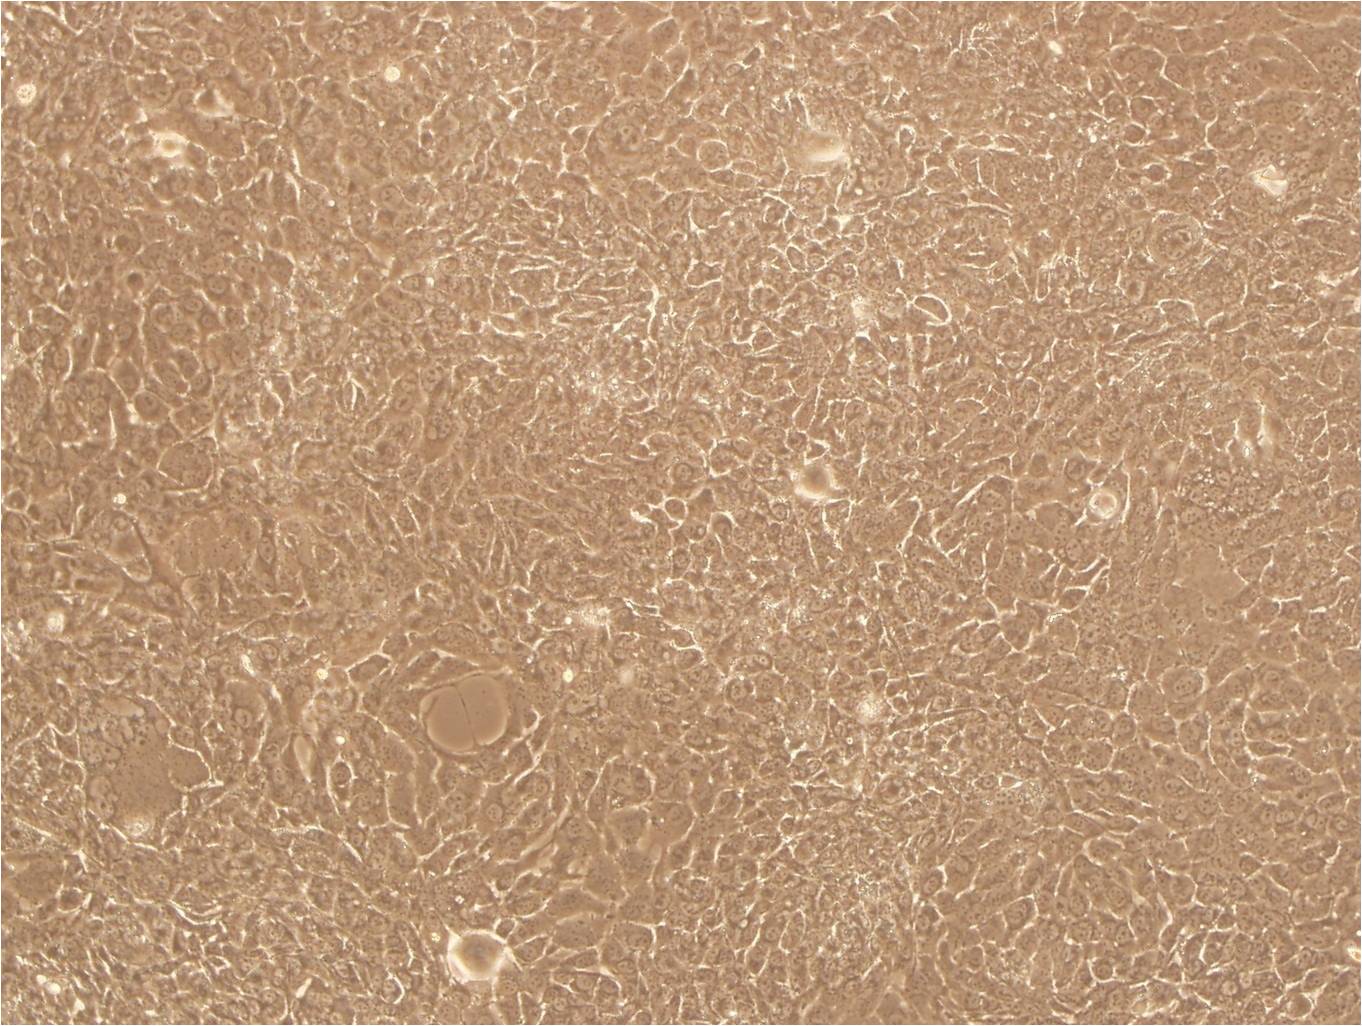 SK-MEL-2 Cells(赠送Str鉴定报告)|人恶性黑色素瘤细胞